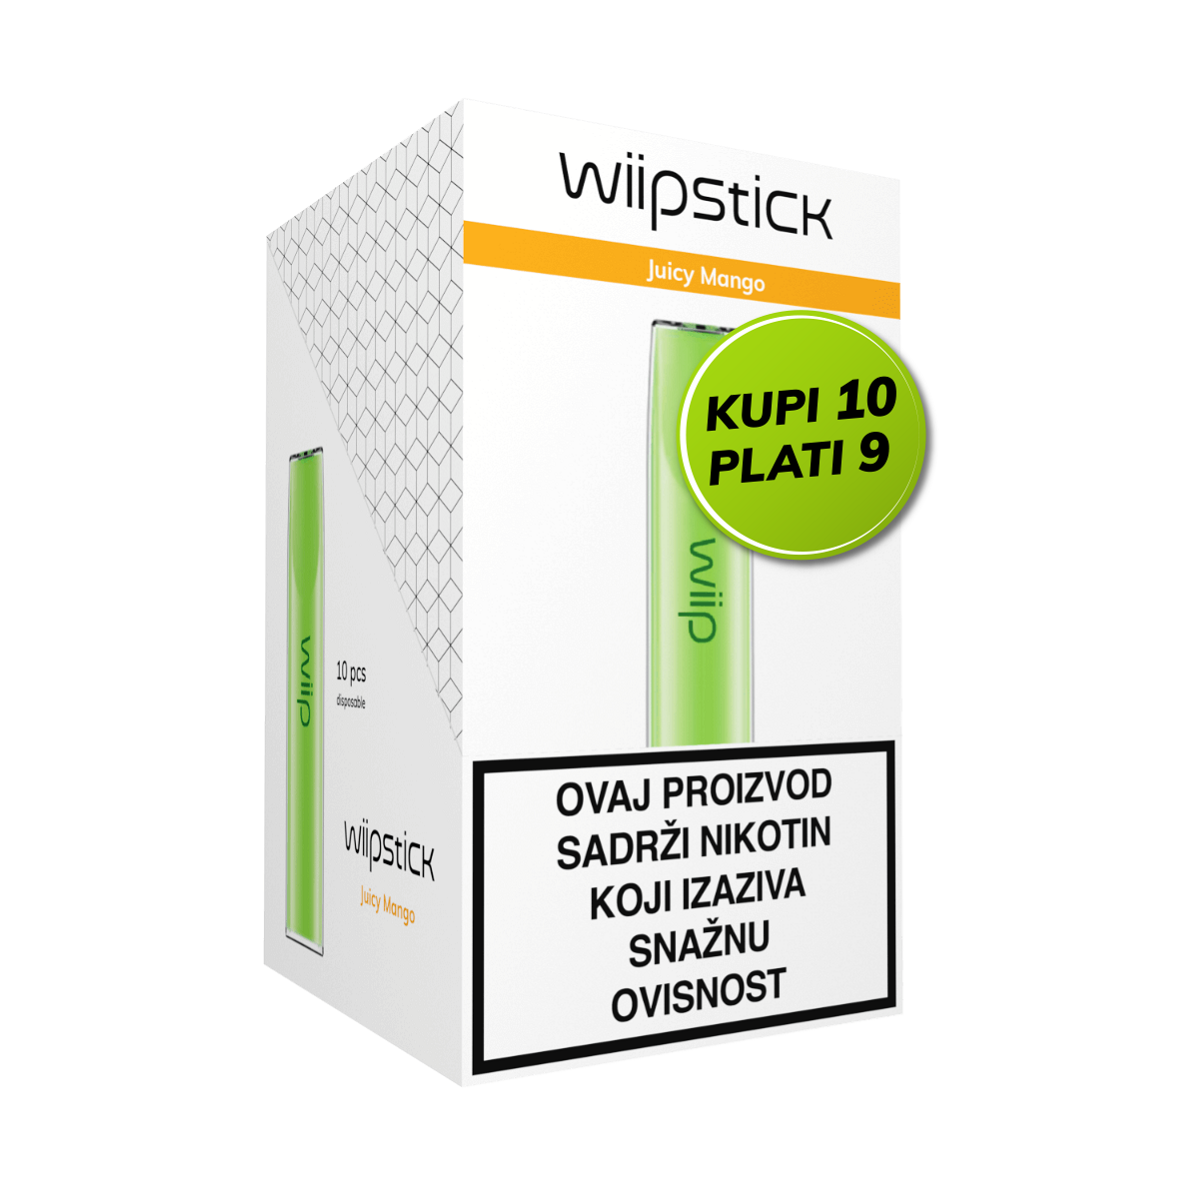 Wiipstick multipack 10/1, Juicy mango